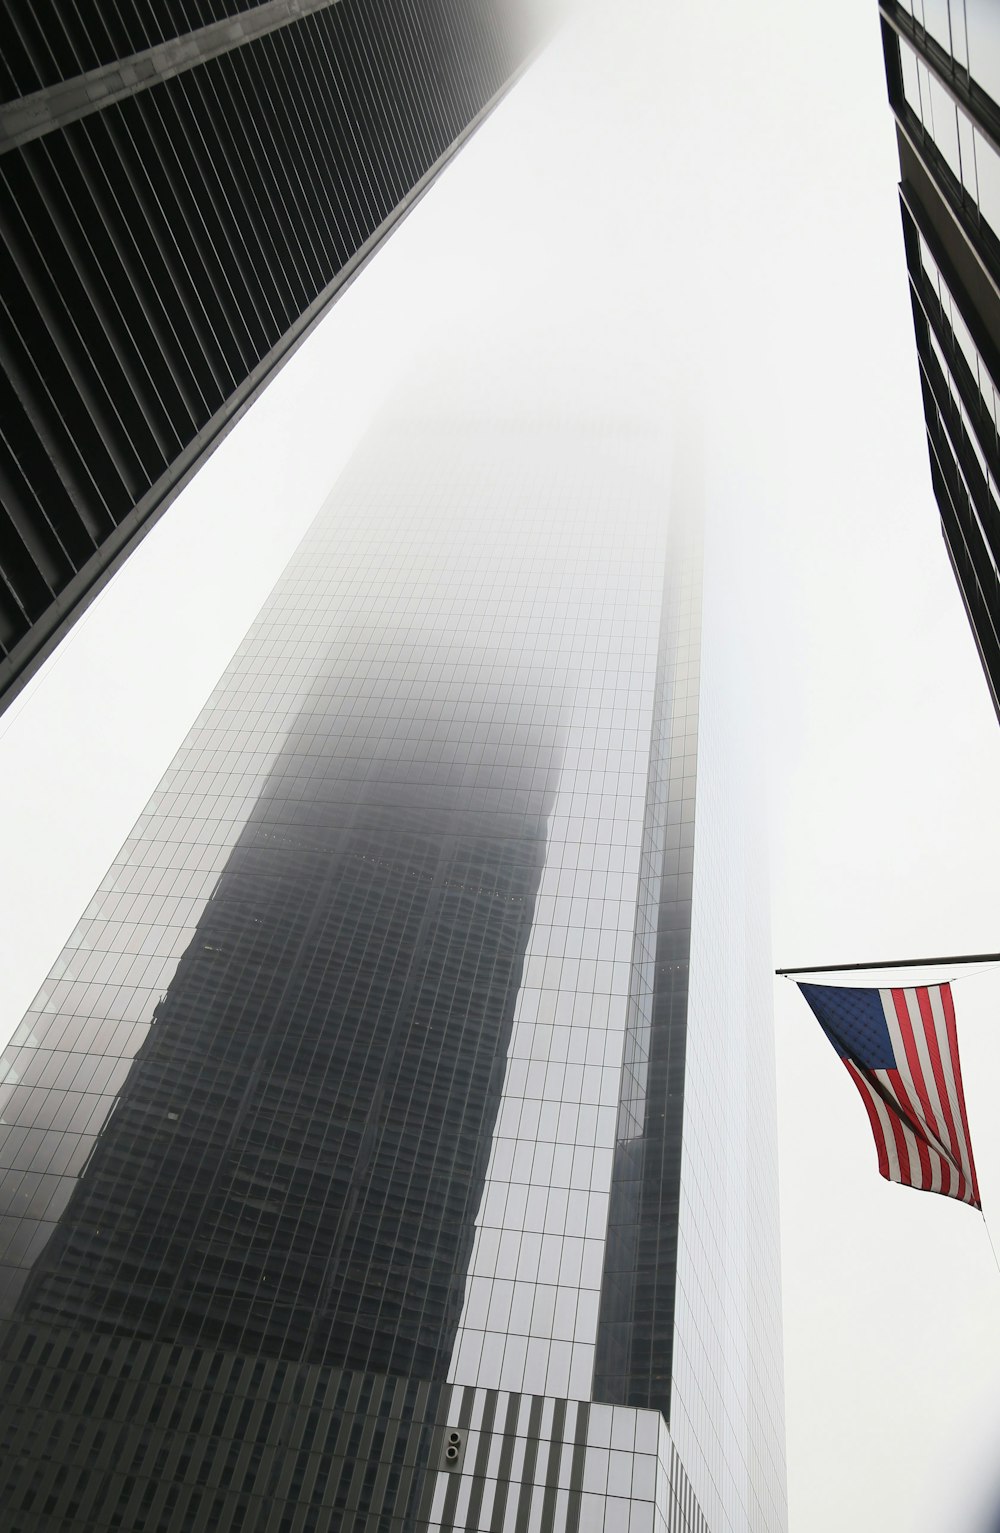 Un edificio alto con dos banderas estadounidenses ondeando frente a él